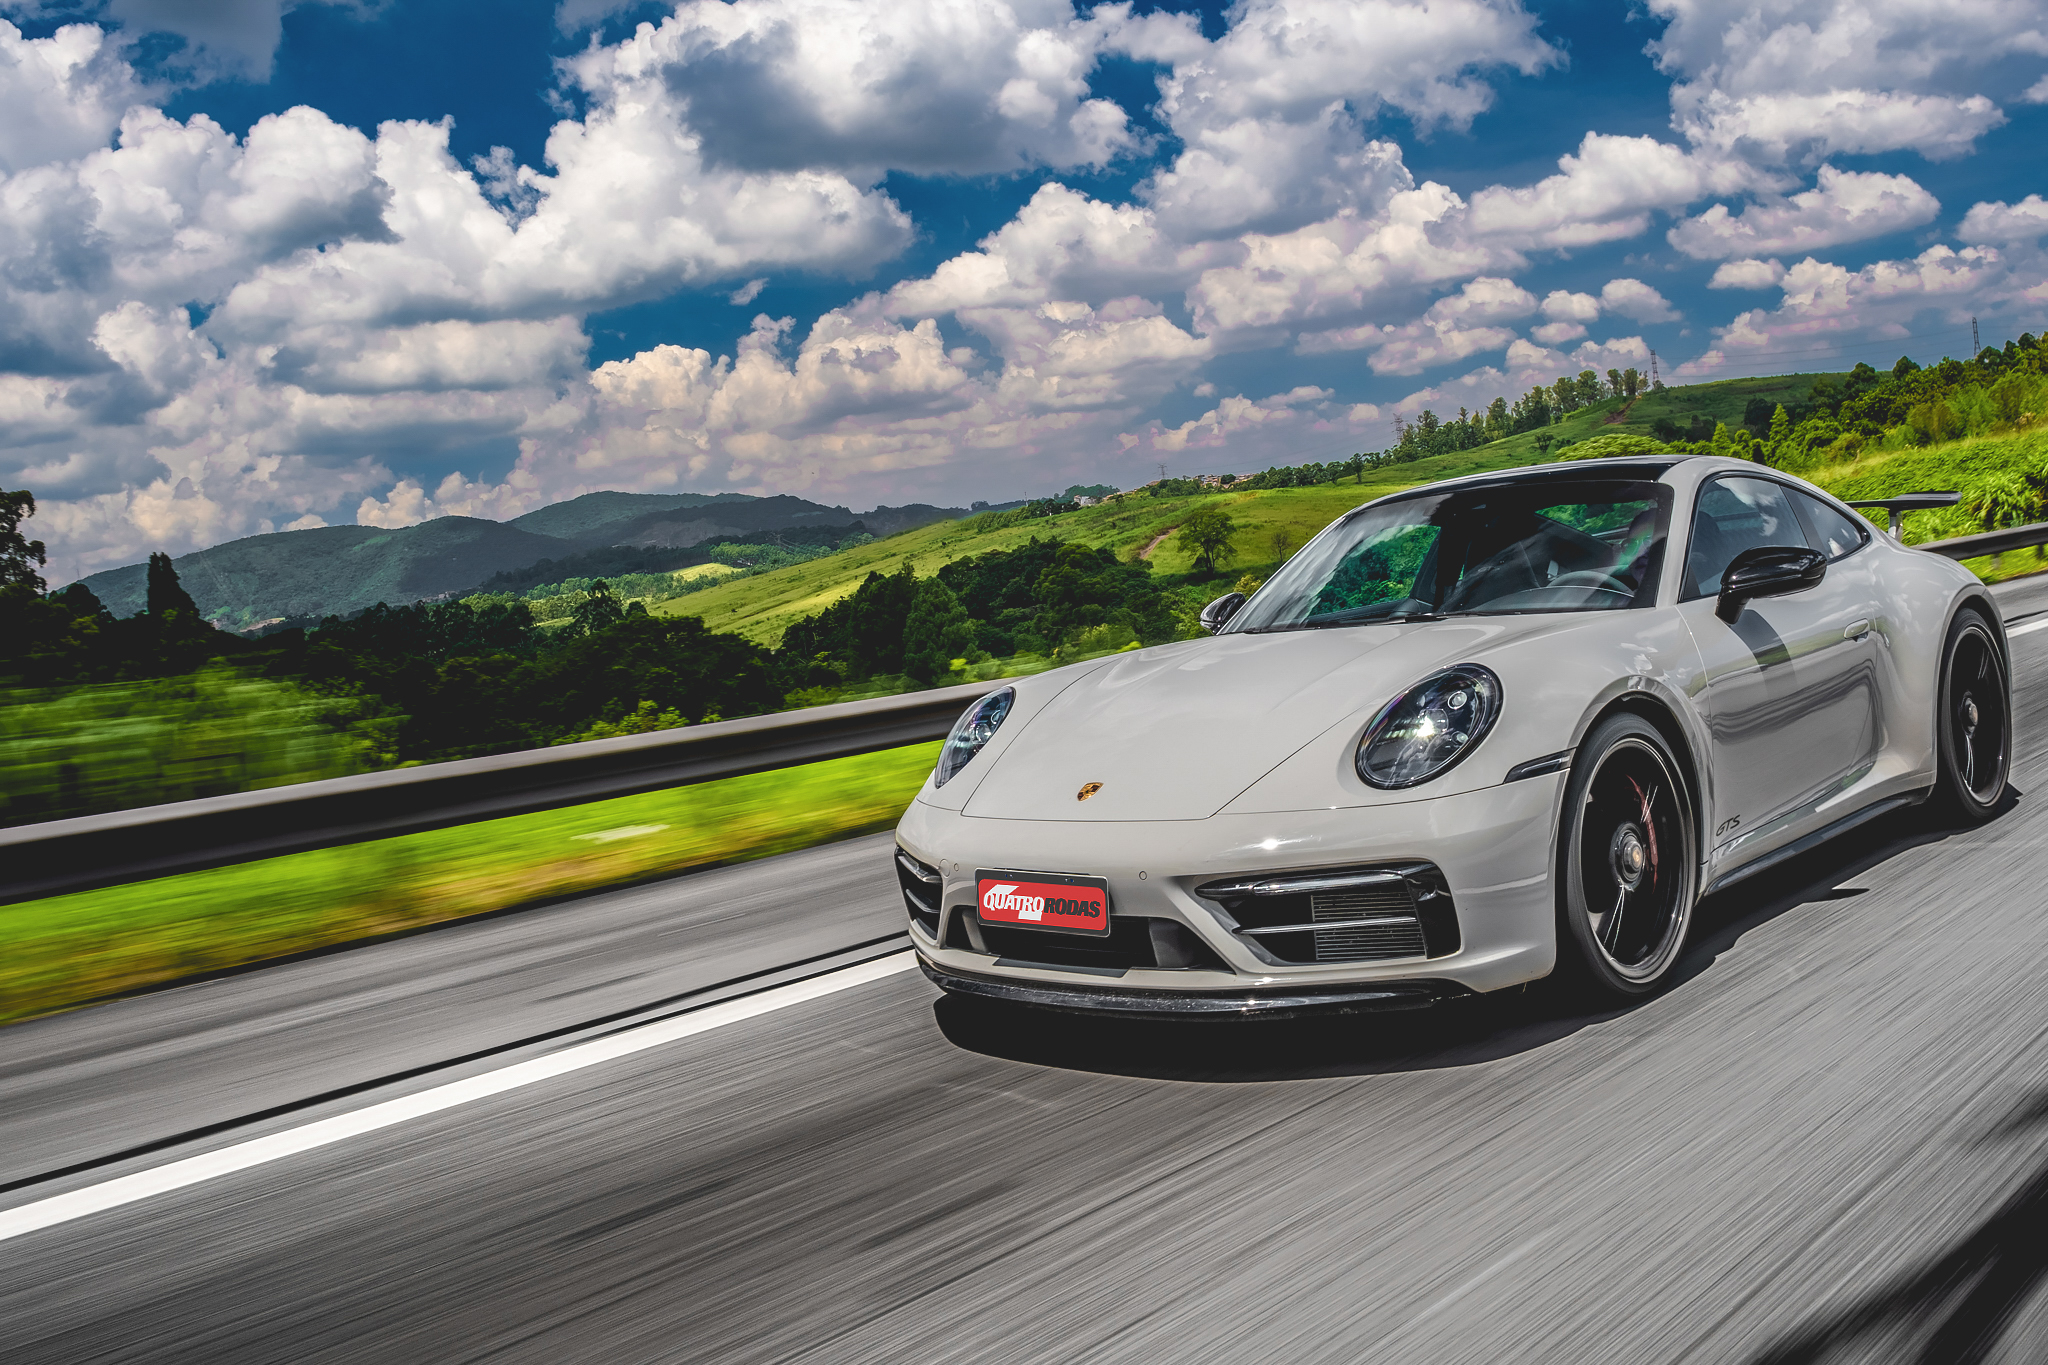 Impressões ao dirigir: Porsche 911 GTS é tão divertido quanto o Turbo e  custa BEM menos